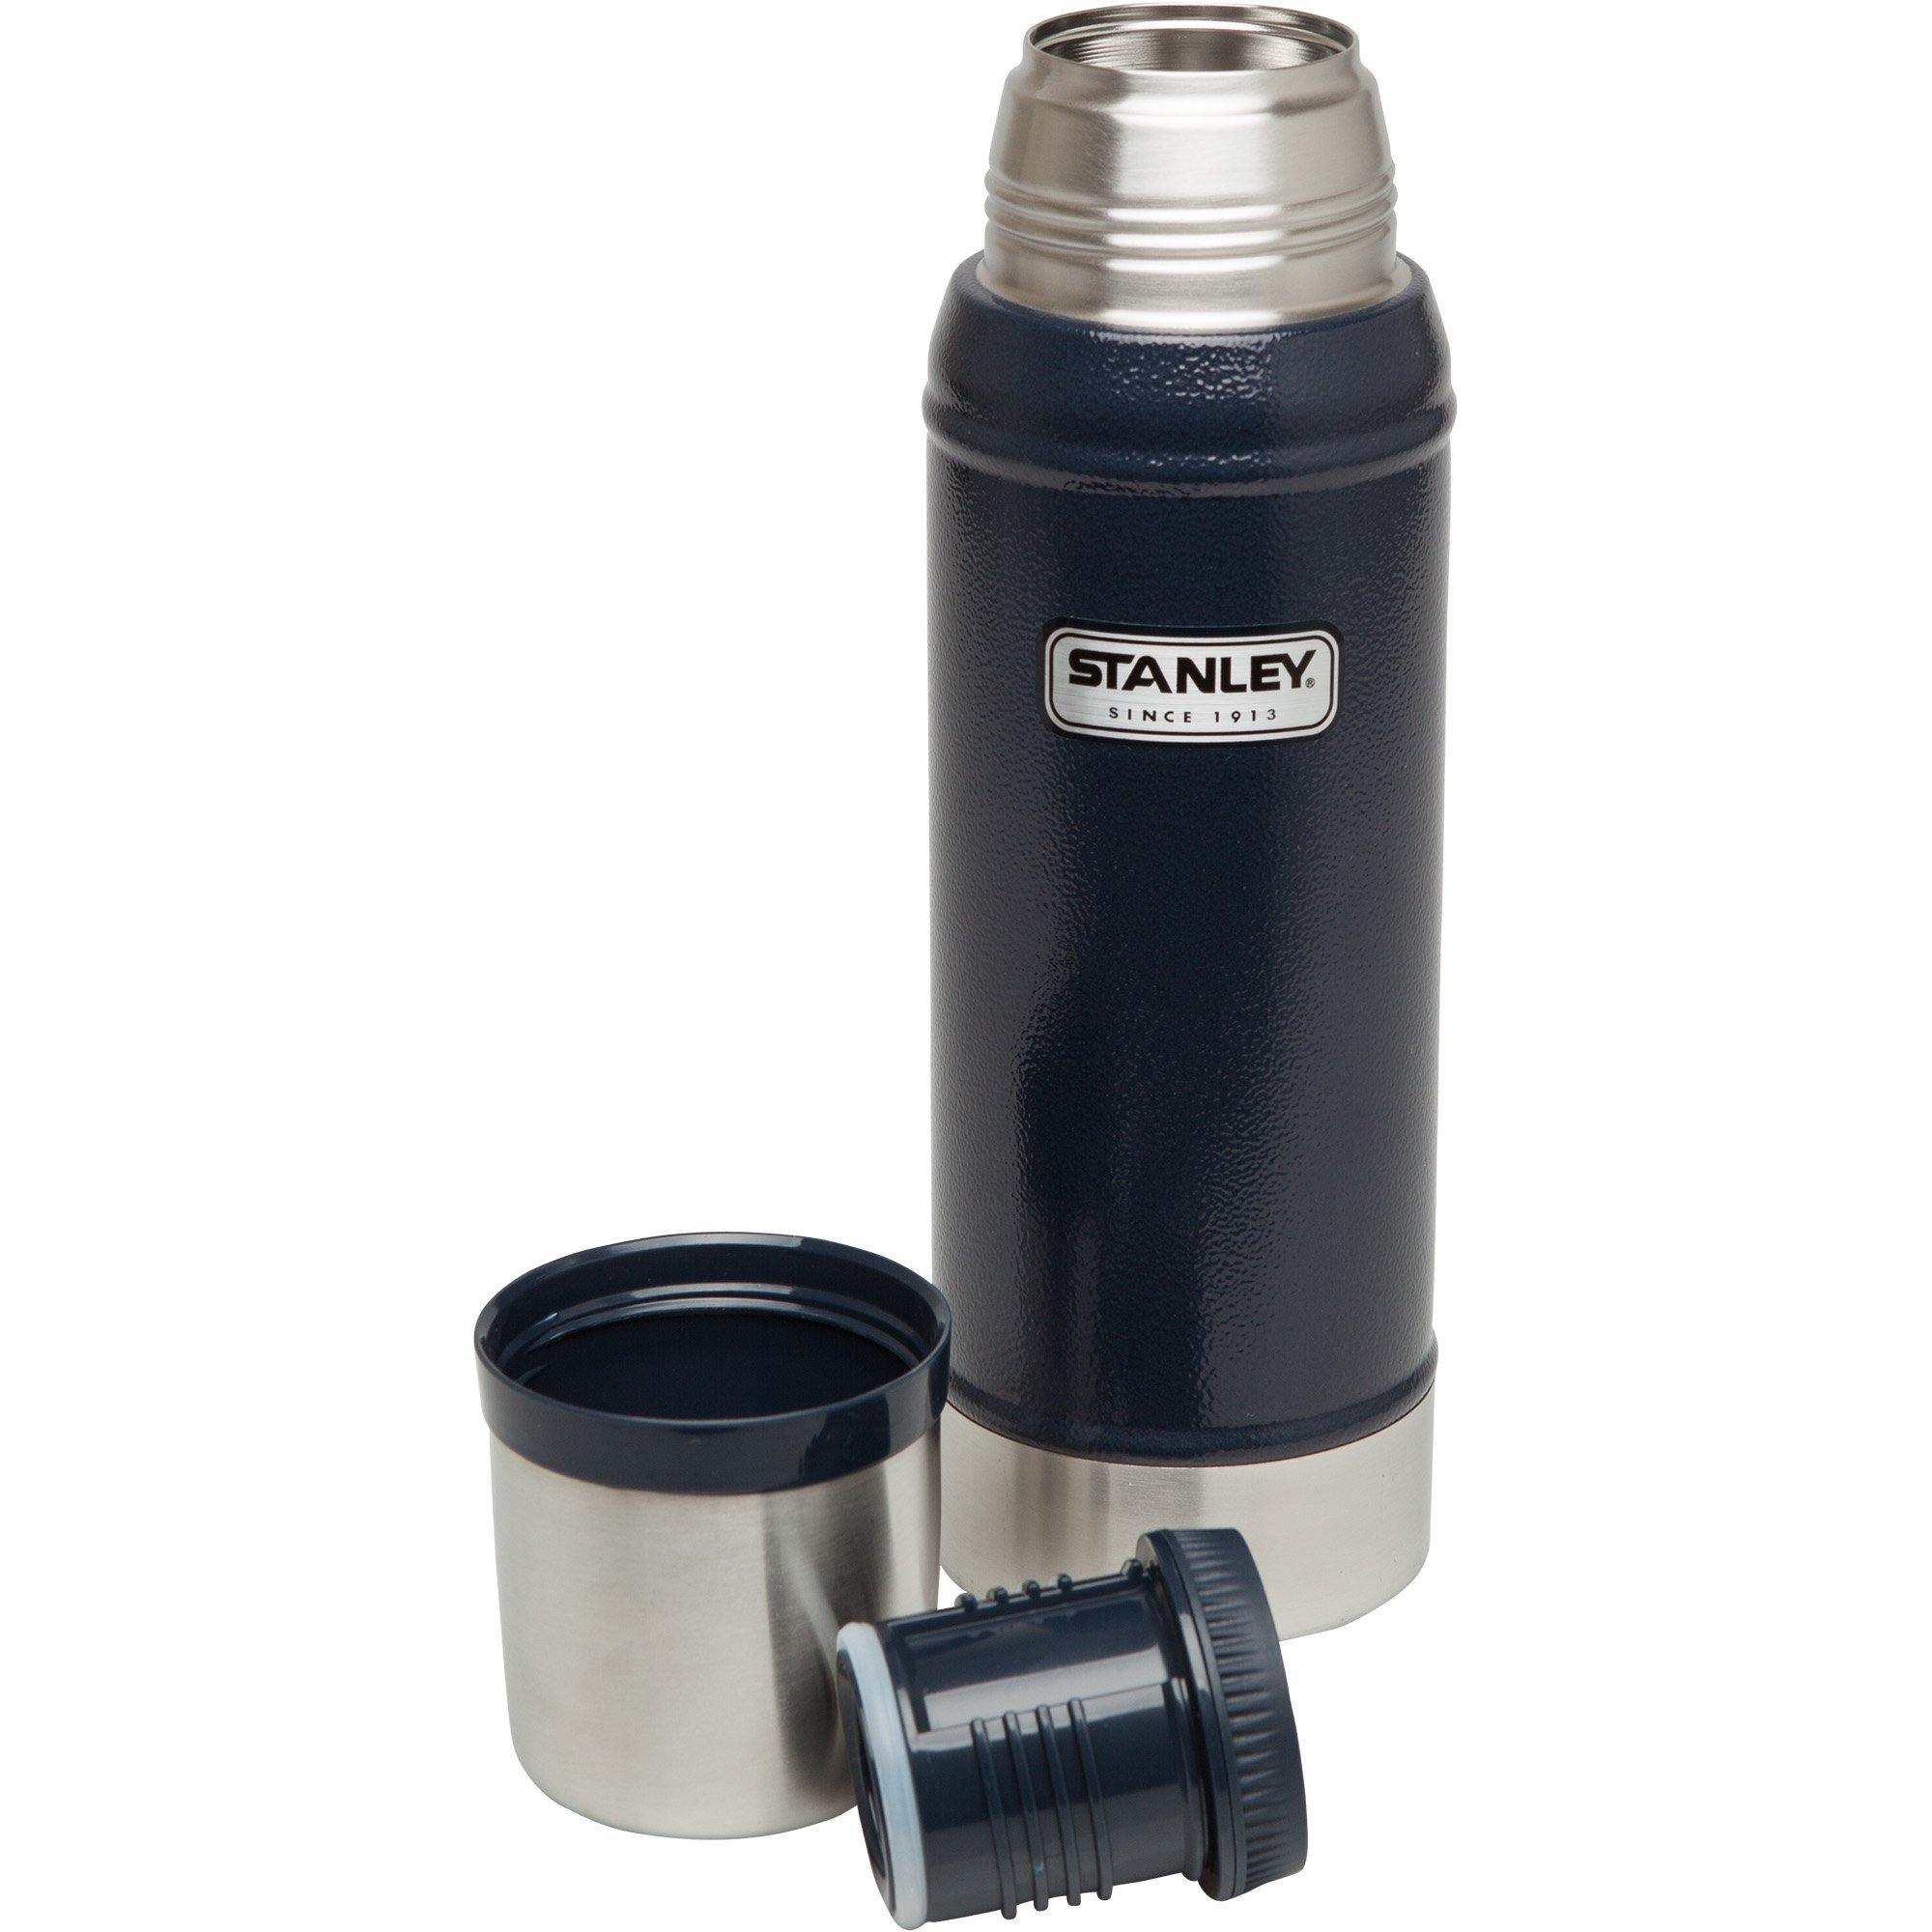 Stanley Vacuum Bottle - 1.1qt - Accessories